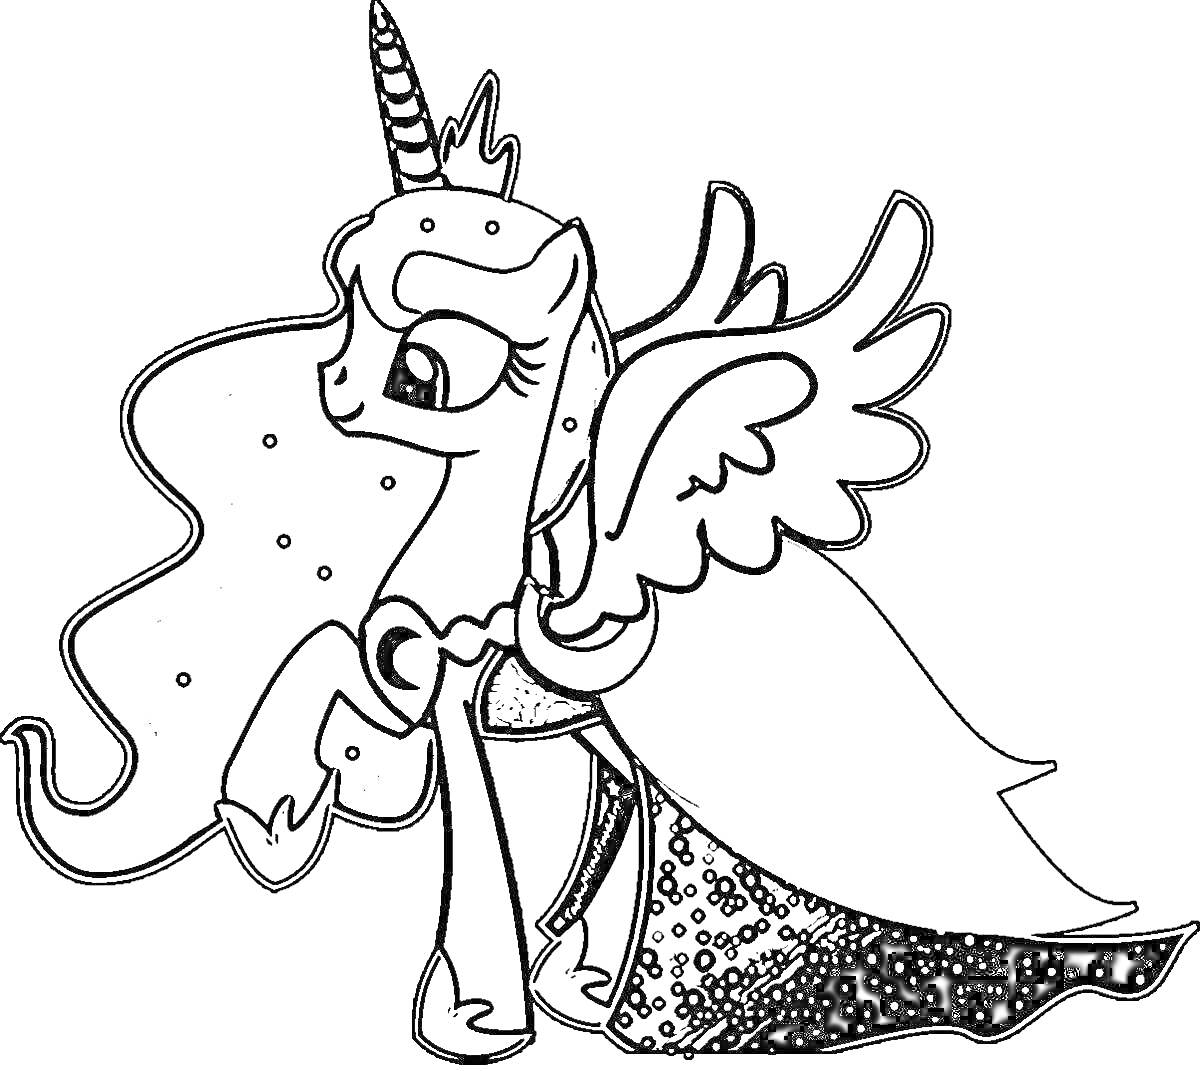 Раскраска Принцесса Селестия с крыльями, рогом, короной, накидкой и завитыми волосами с точечными украшениями.